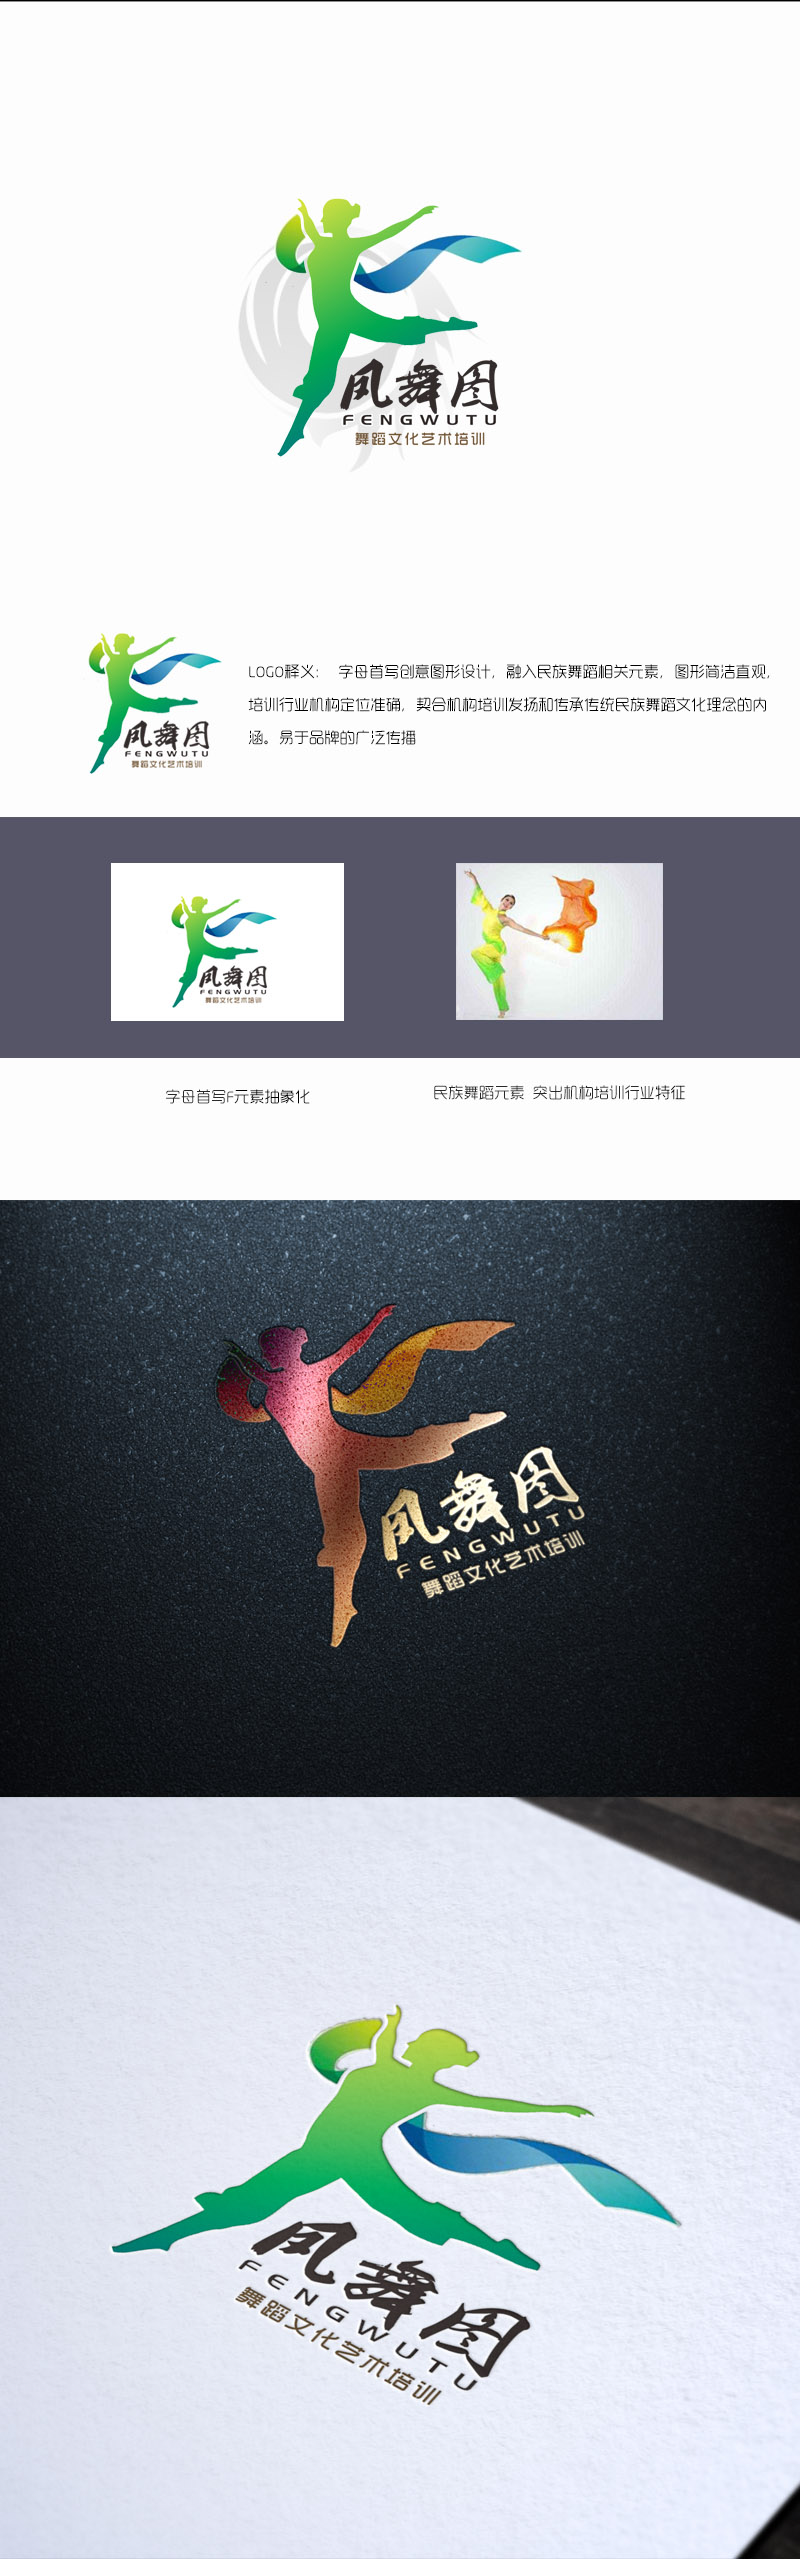 郭庆忠的深圳市凤舞图舞蹈文化艺术培训有限公司logo设计